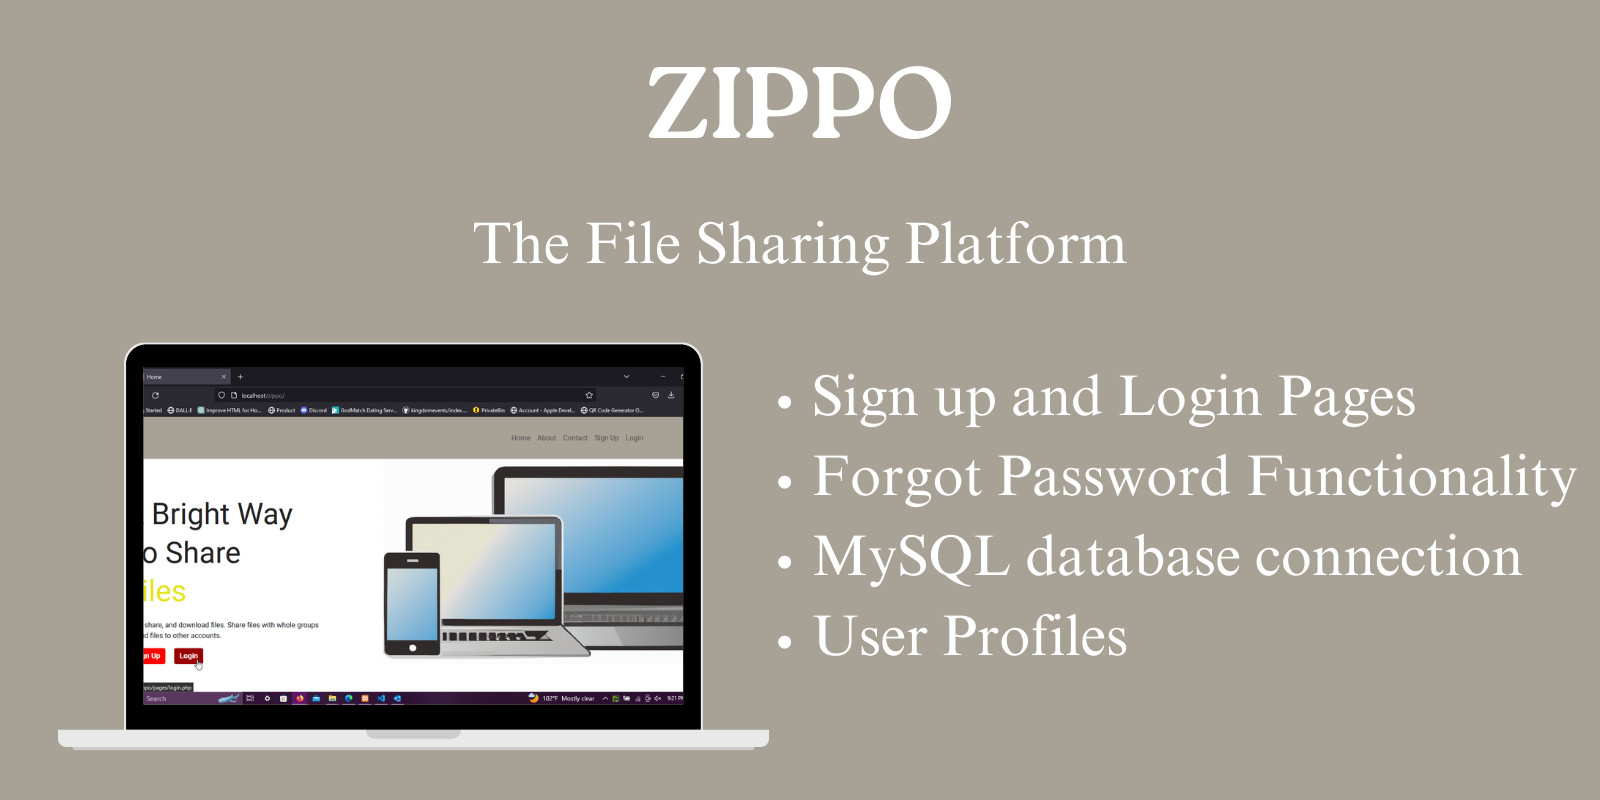 Zippo Fileshare v1.0 - Filesharing Platform